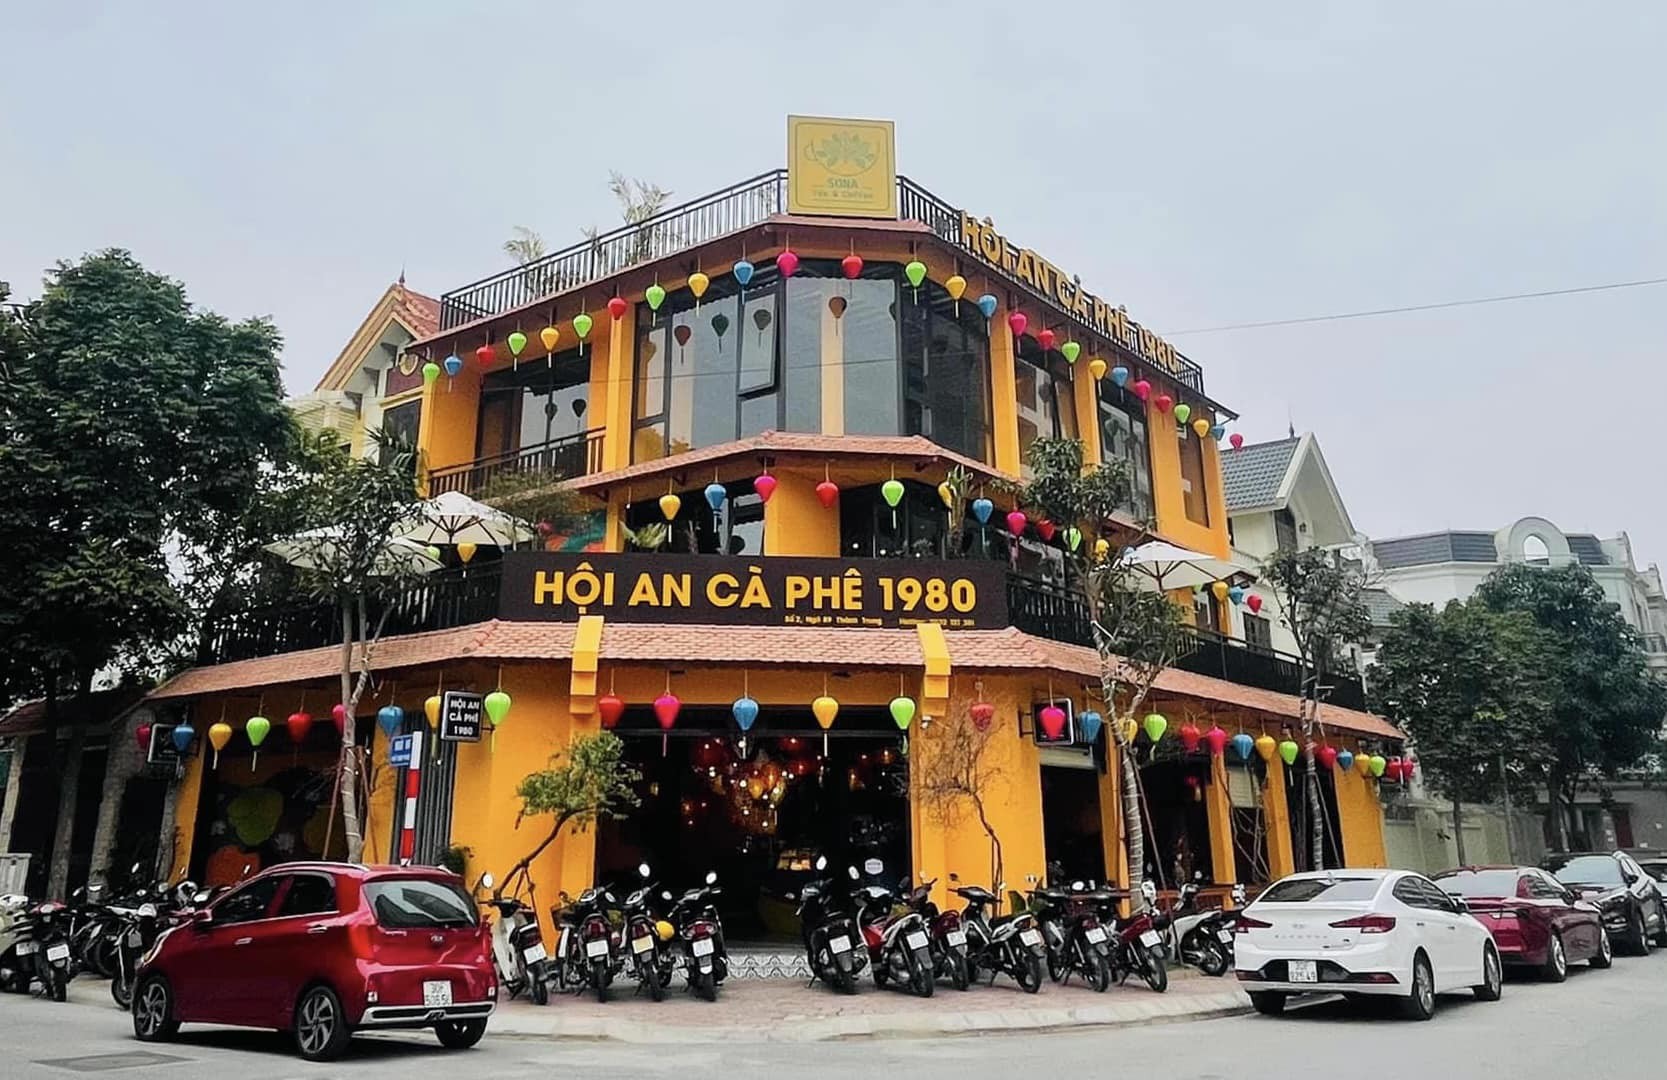 Hệ Thống An Hội An Cà Phê đã dần khẳng định thương hiệu trên thị trường Cà Phê Việt Nam